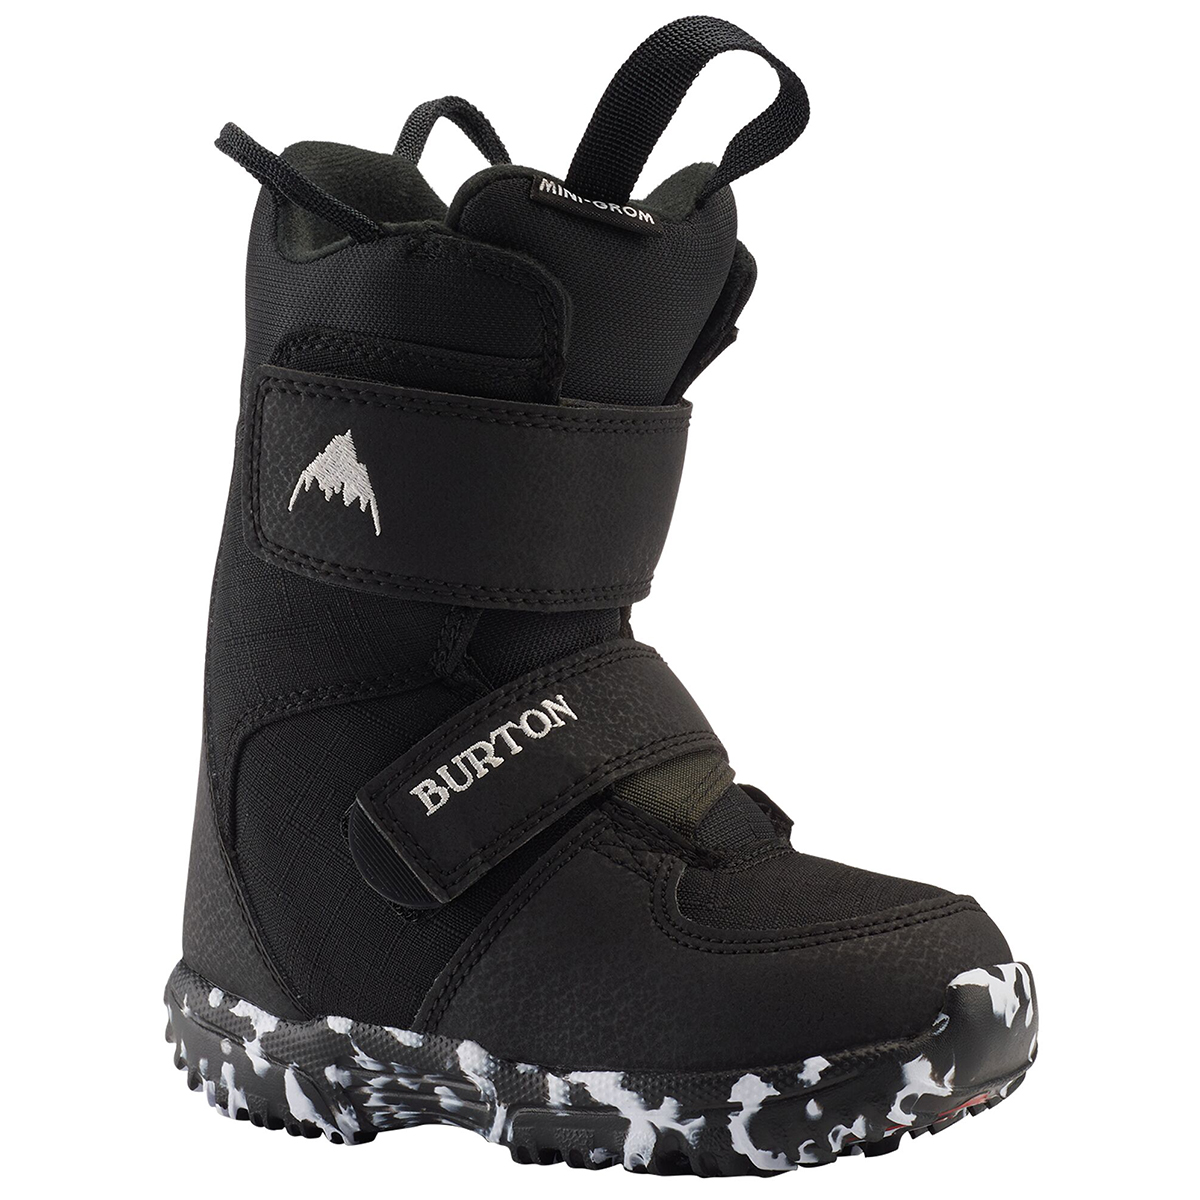 Ботинки для сноуборда Burton Mini Grom 2021-2022 black 28 см